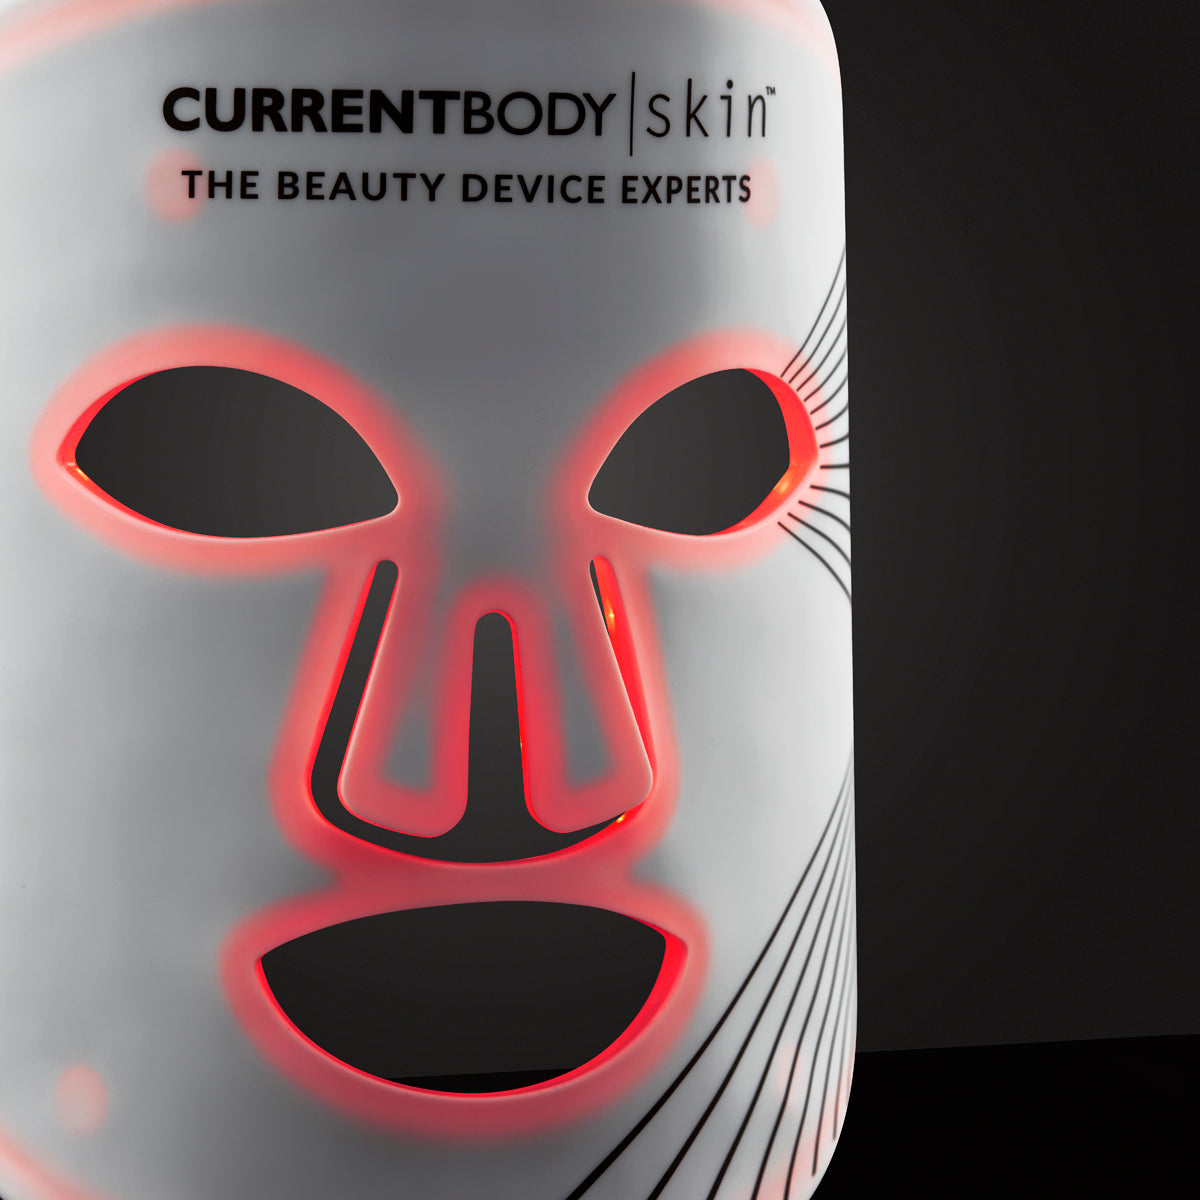 CurrentBody skin LEDマスク\n世界シェアNo.1のLEDマスク通電確認済みです